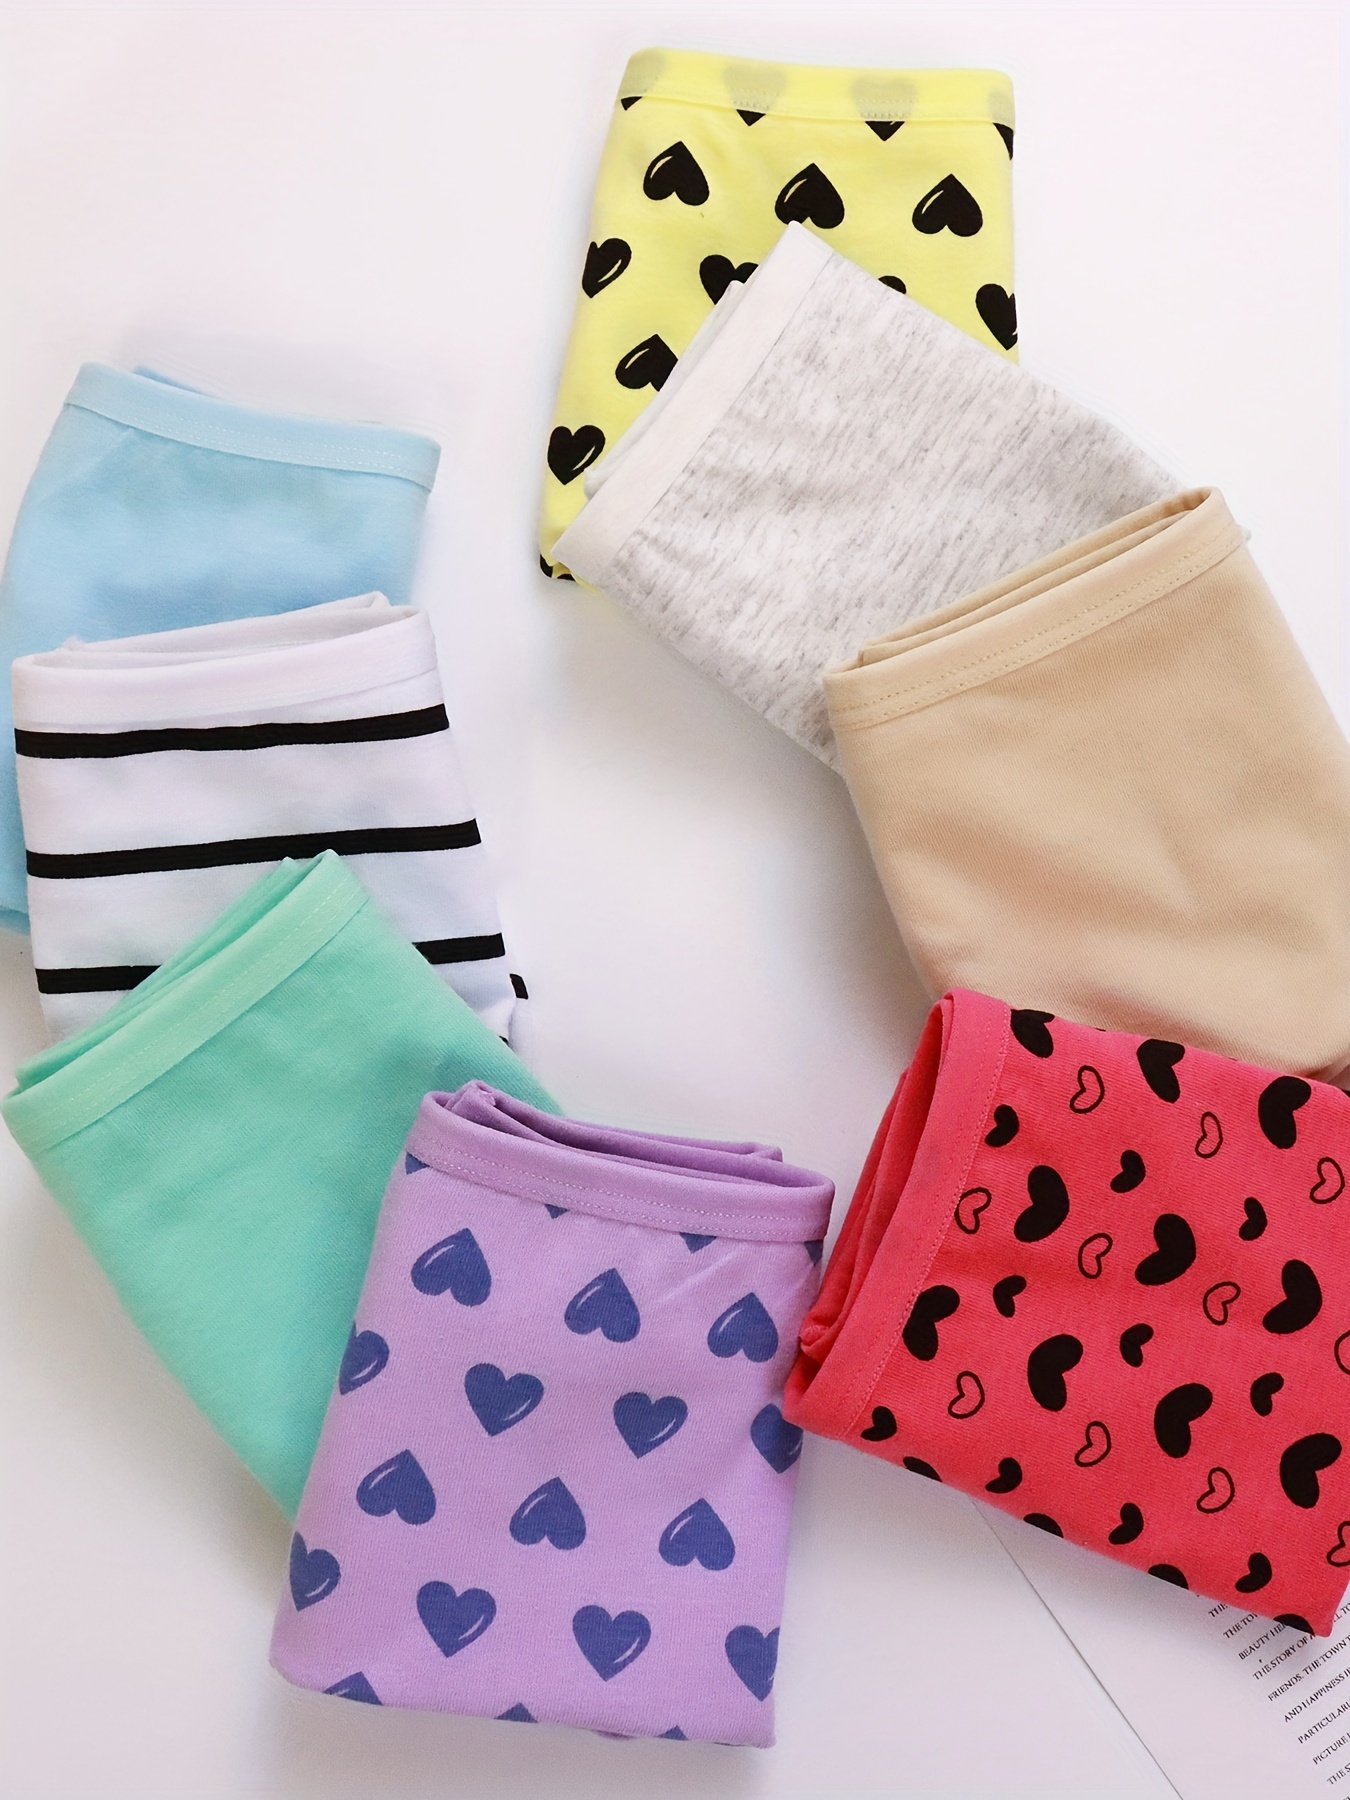 JackLoveBriefs Teenage Girls' Underwear for 12 Pack Big Knickers